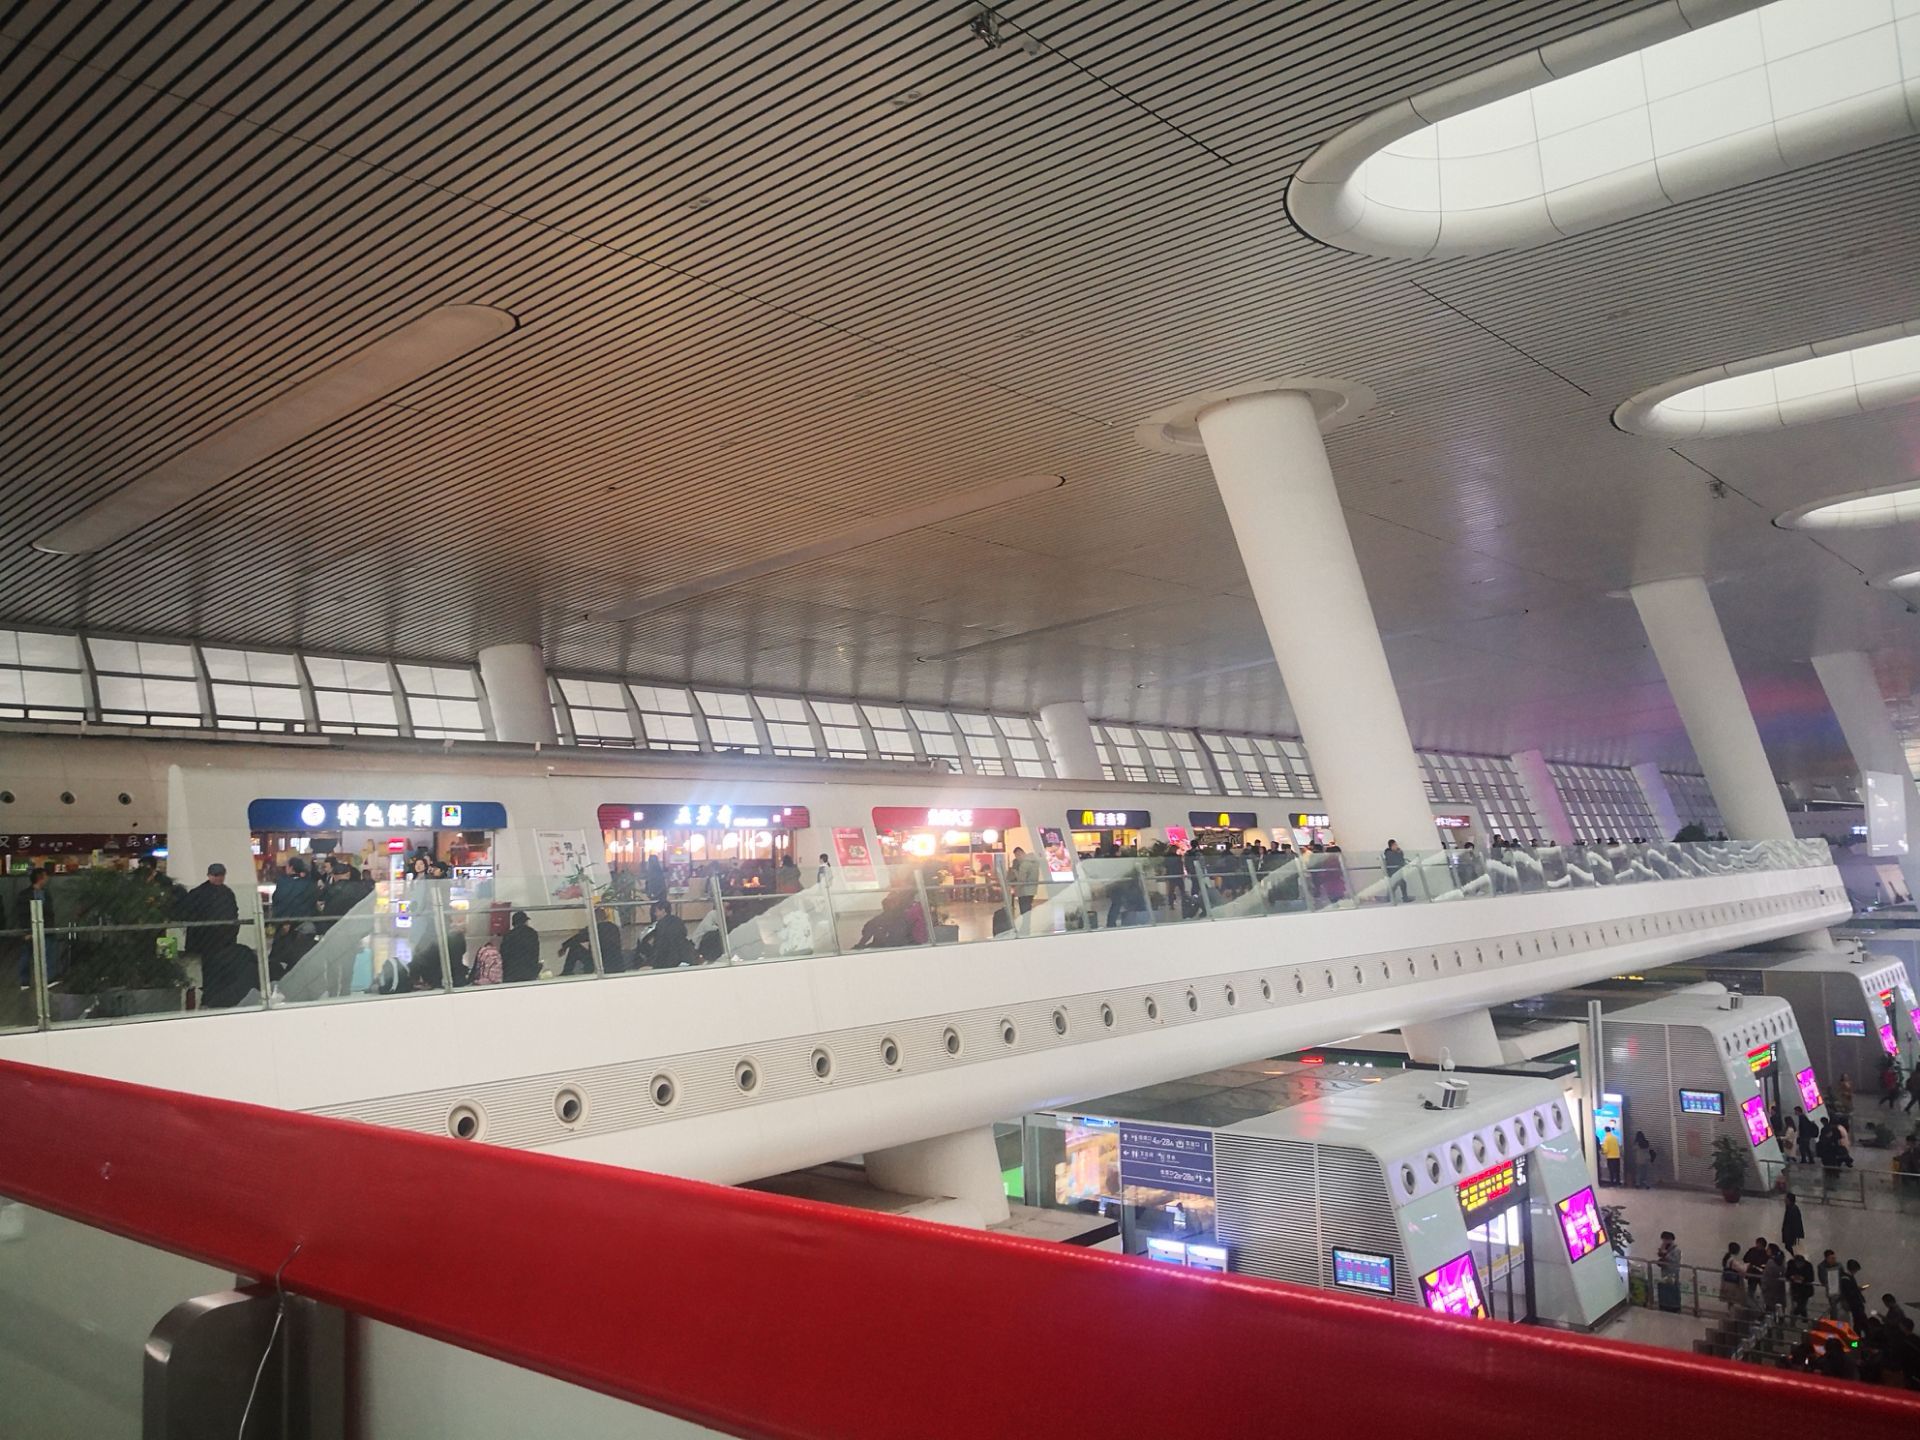 杭州火车东站内部图片